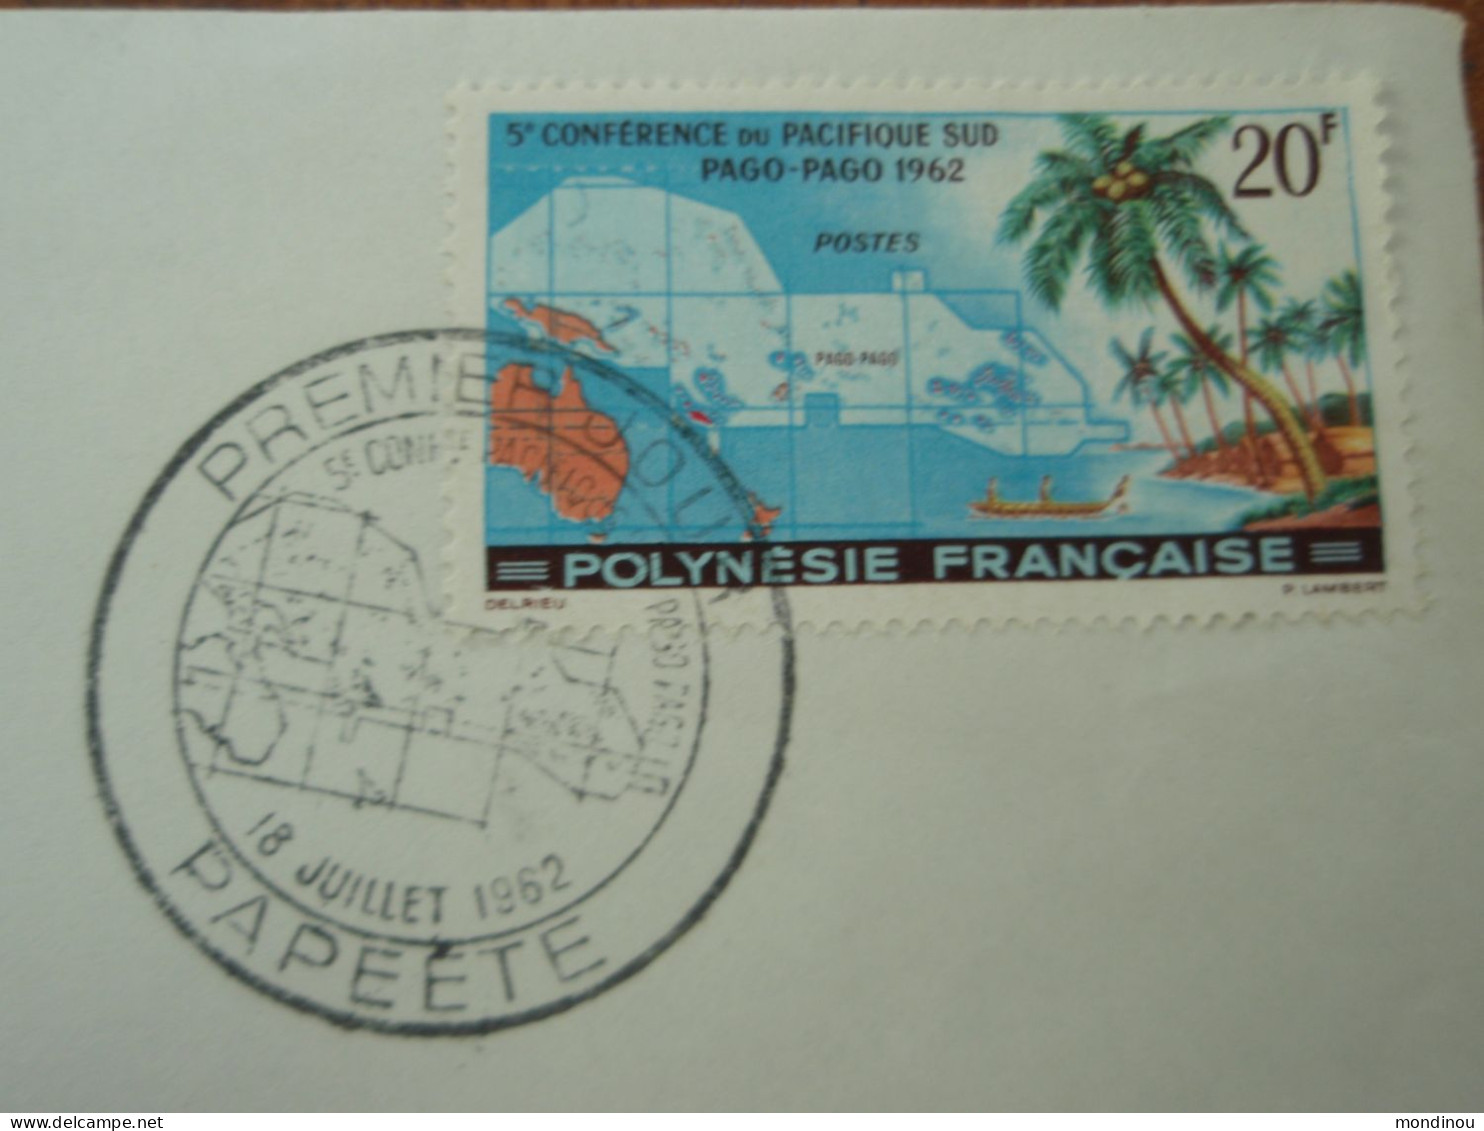 Timbre Polynésie Française - 5° Conférence Du Pacifique Sud PAGO-PAGO 1962 - Premier Jour PAPEETE - Usati